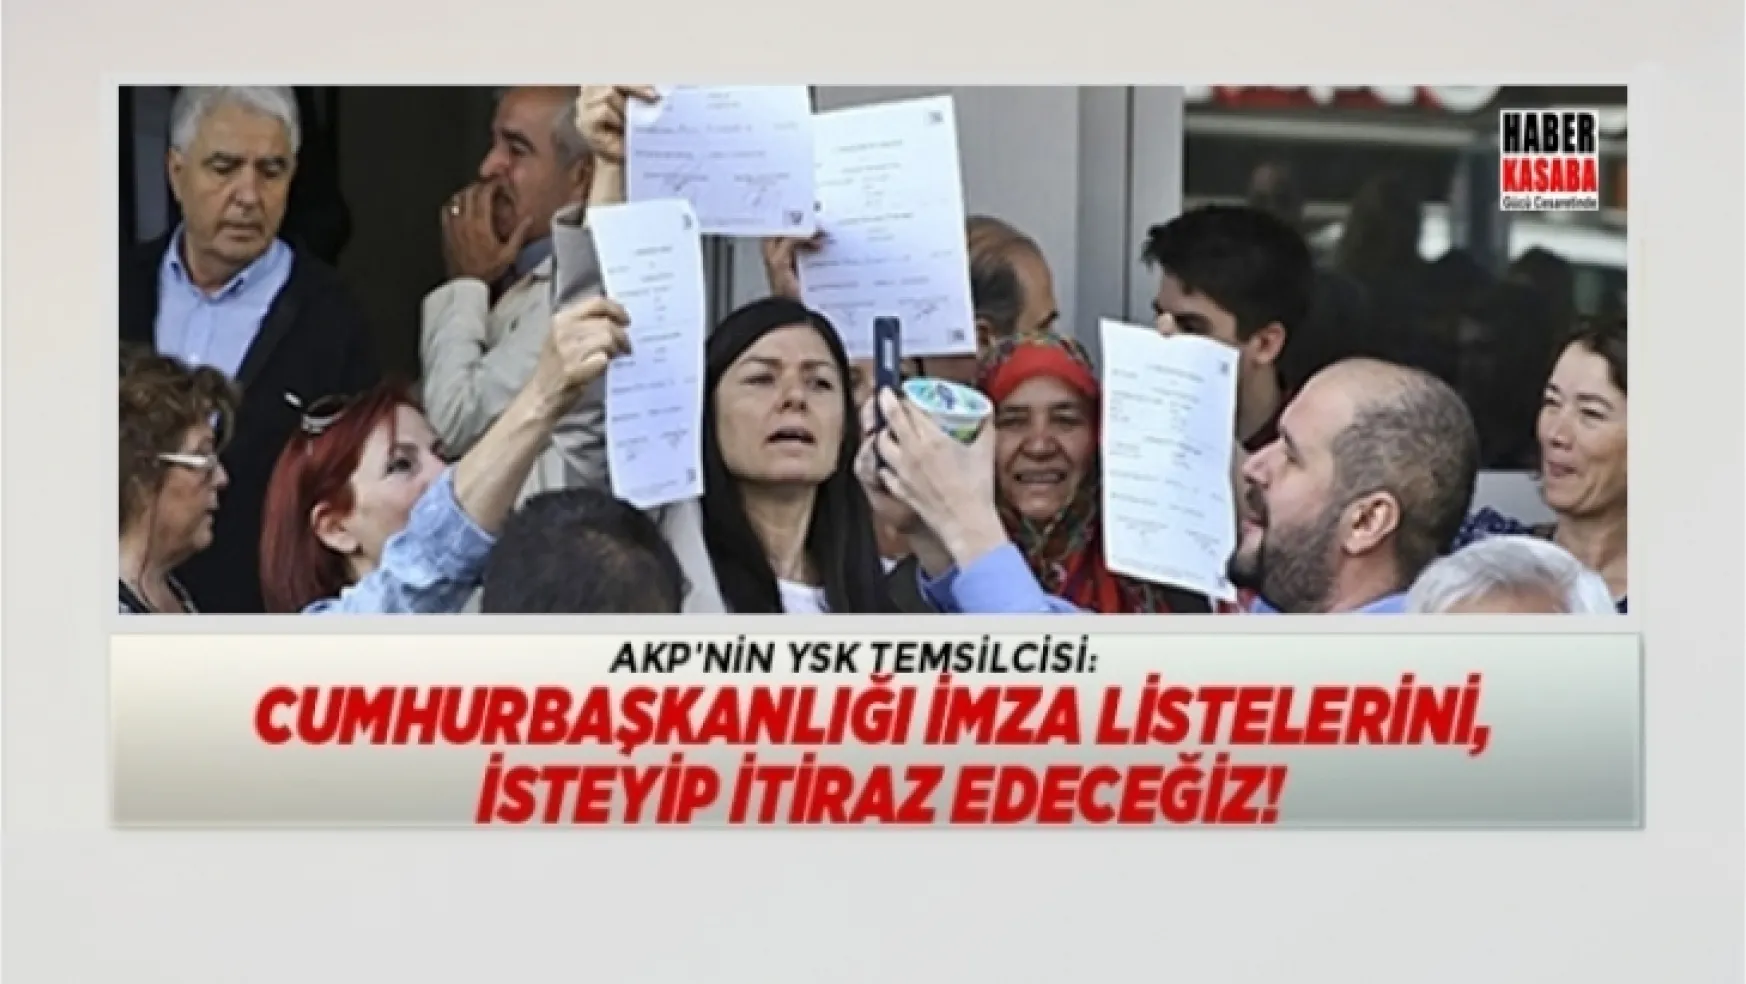 AKP'nin YSK temsilcisi 'İmza listelerini, isteyip itiraz edeceğiz!'